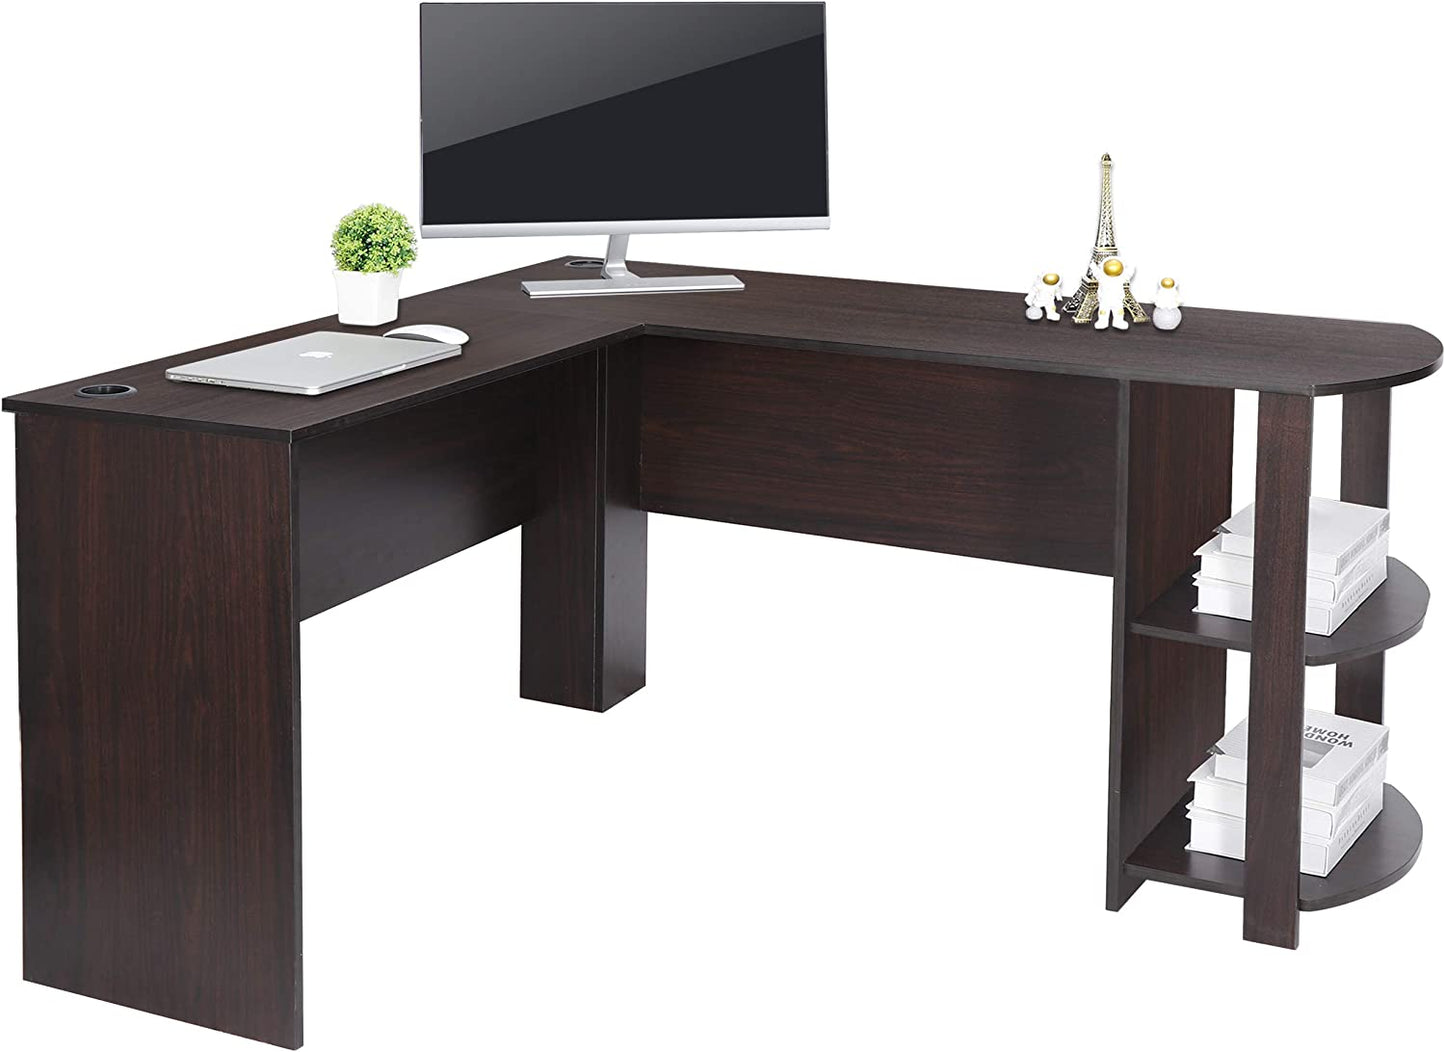 L-Shaped Computer Desk with Bookshelf 53.6’’ Corner Desk Gaming Desk Large Home Office Desk with Storage, Espresso